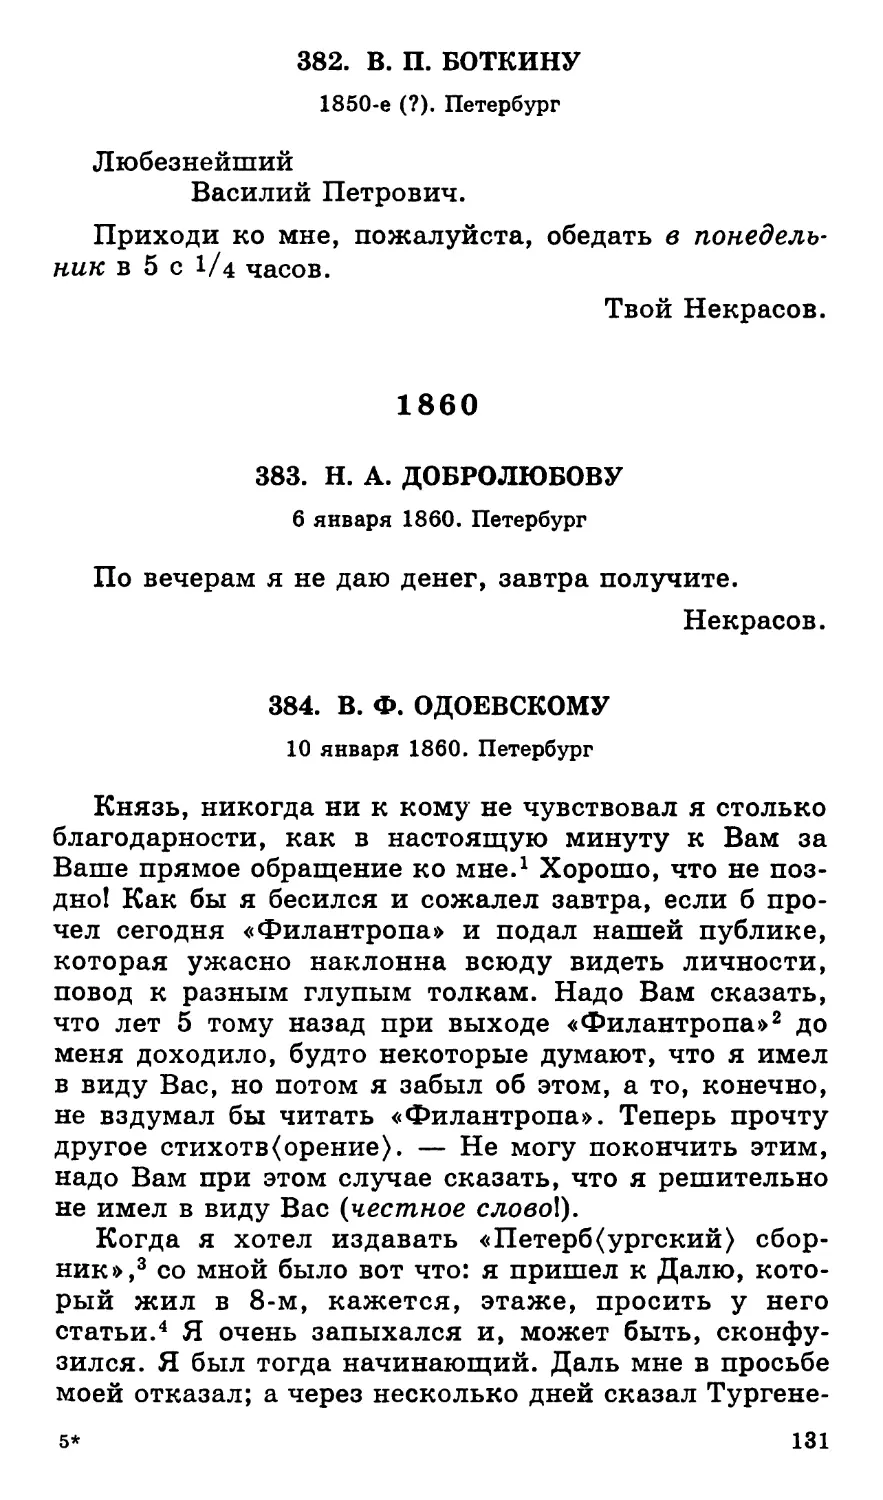 1860
384.В. Ф. Одоевскому. 10 января